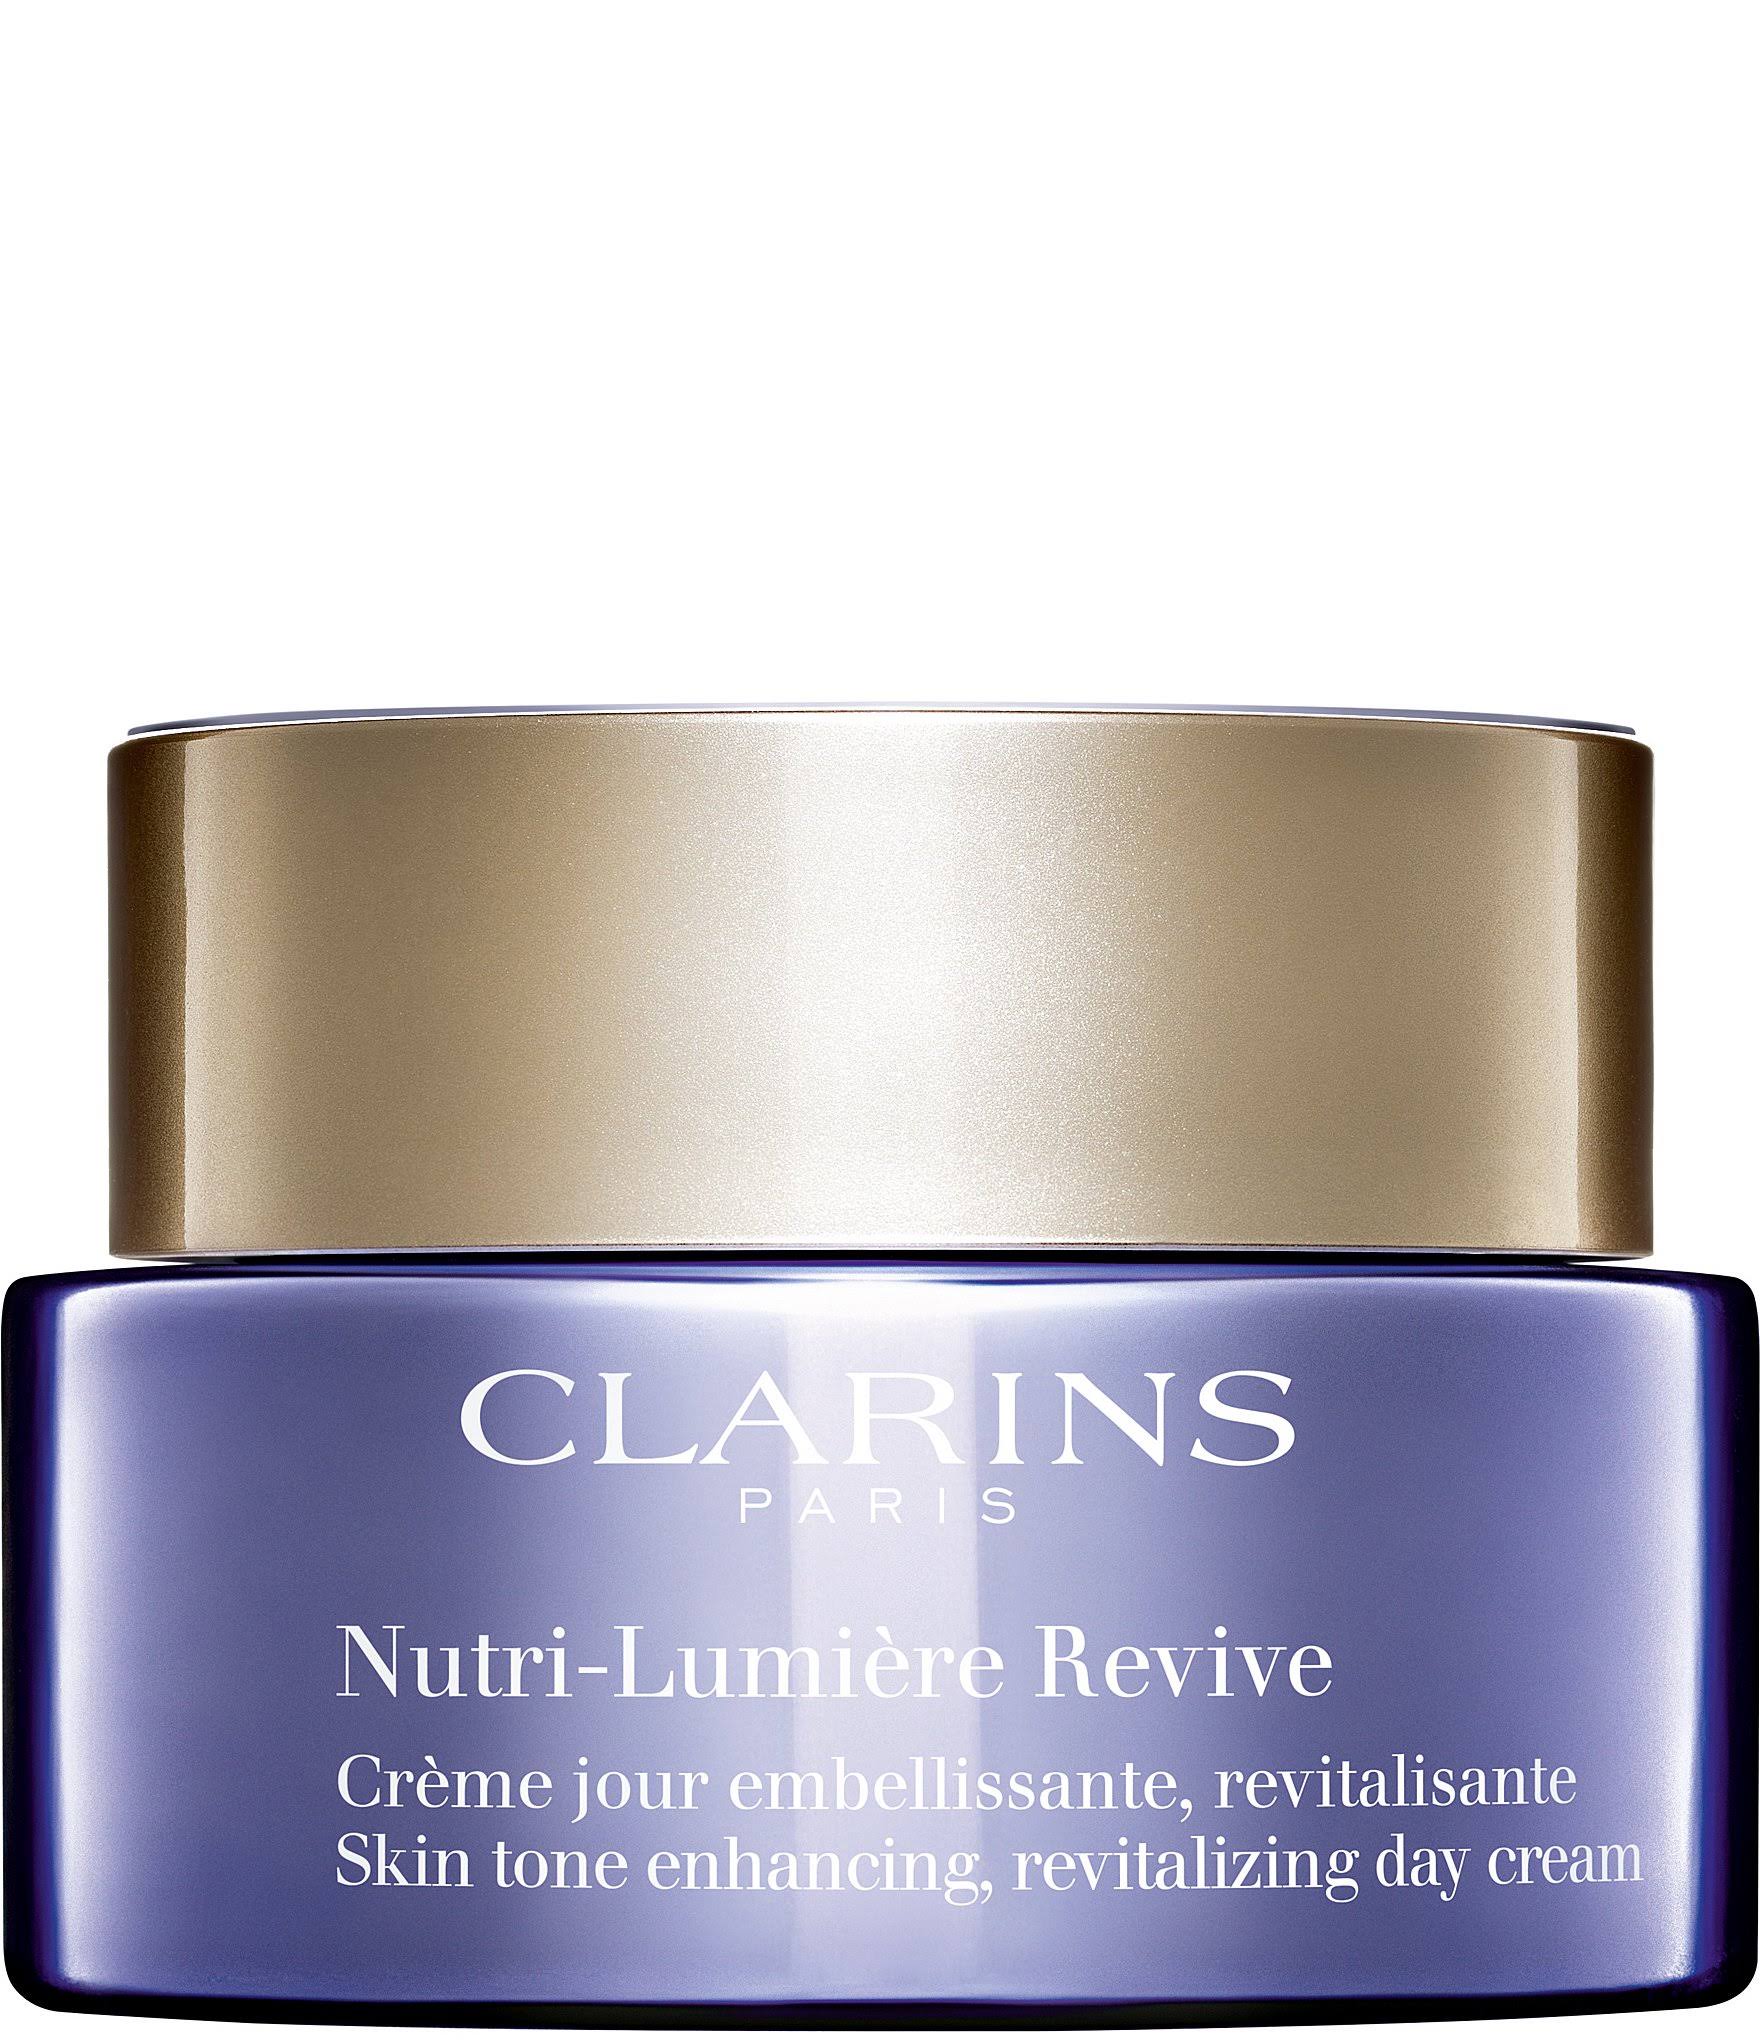 Clarins Nutri-Lumiere Revive Day Cream, 1.7 oz.